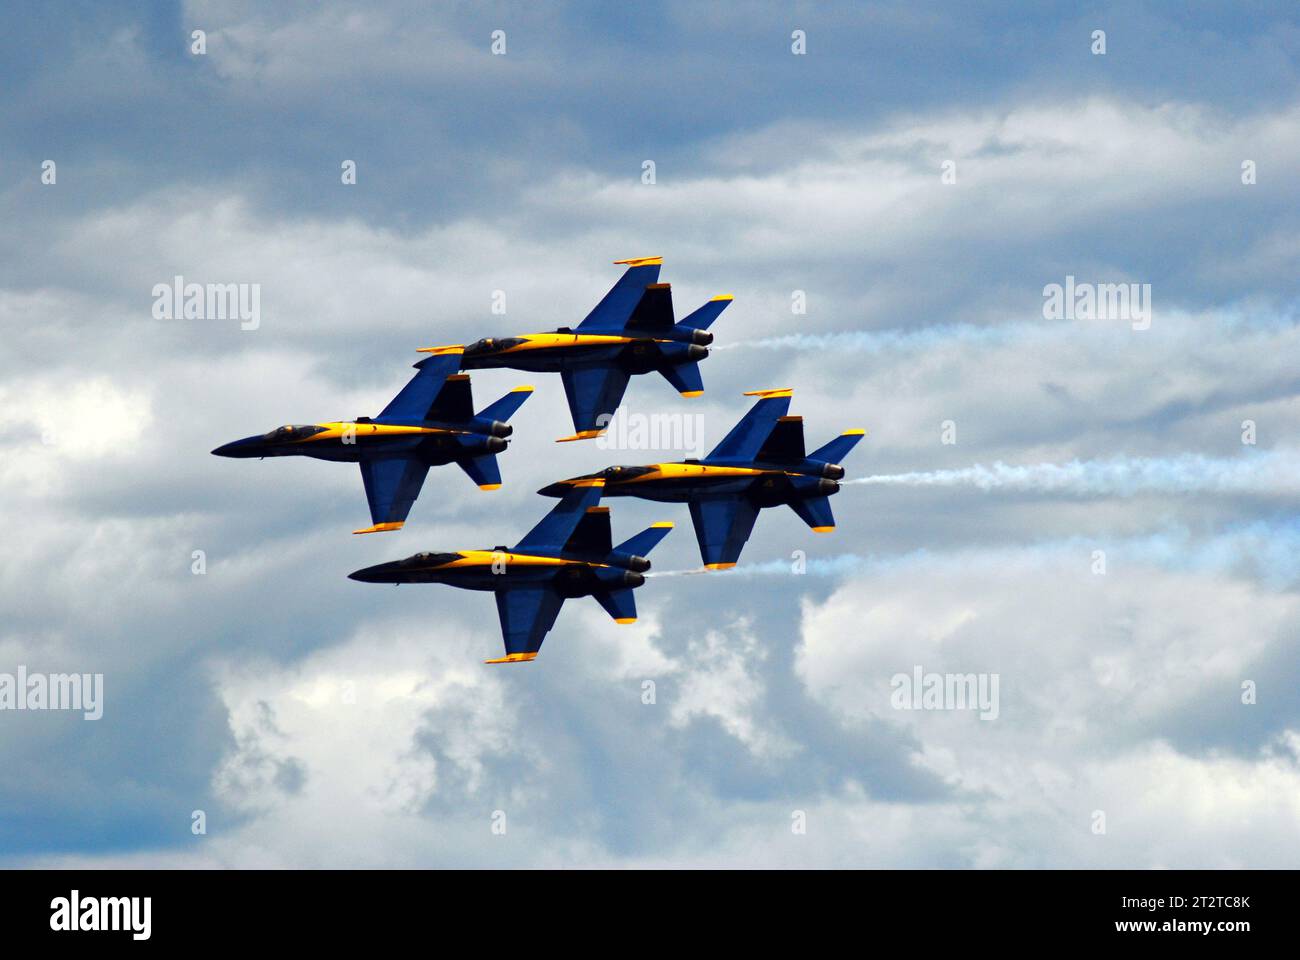 Eine Gruppe von vier Jet-Flugzeugen der Blue Angels fliegt bei einer Flugschau in einer Diamantenformation eng zusammen Stockfoto